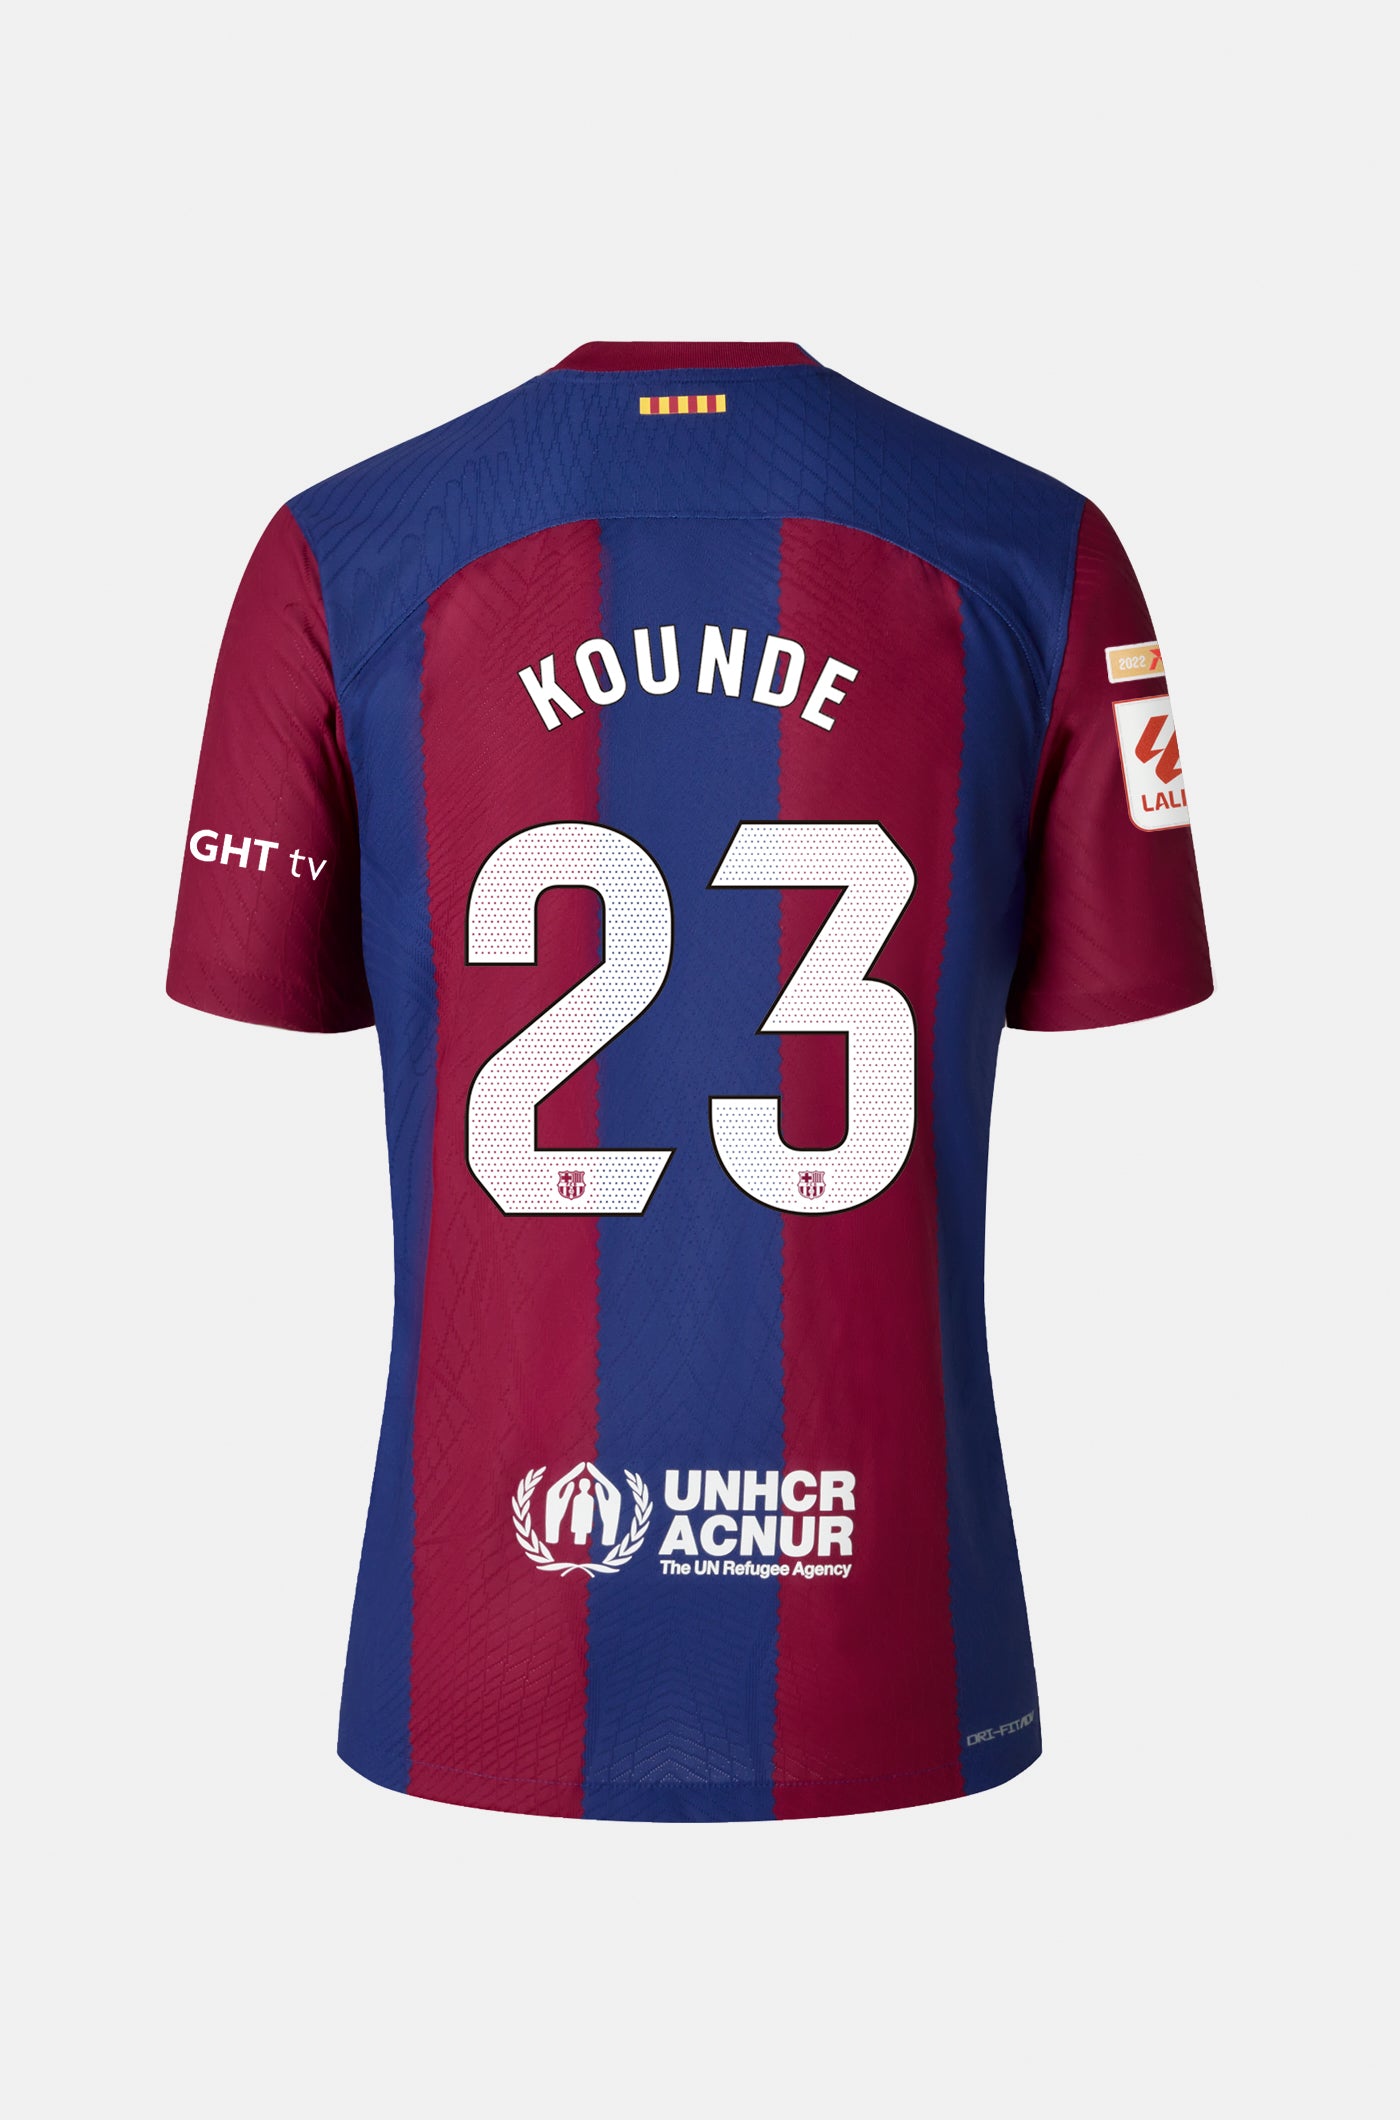 LFP FC Barcelona home shirt 23/24 - Women - KOUNDE